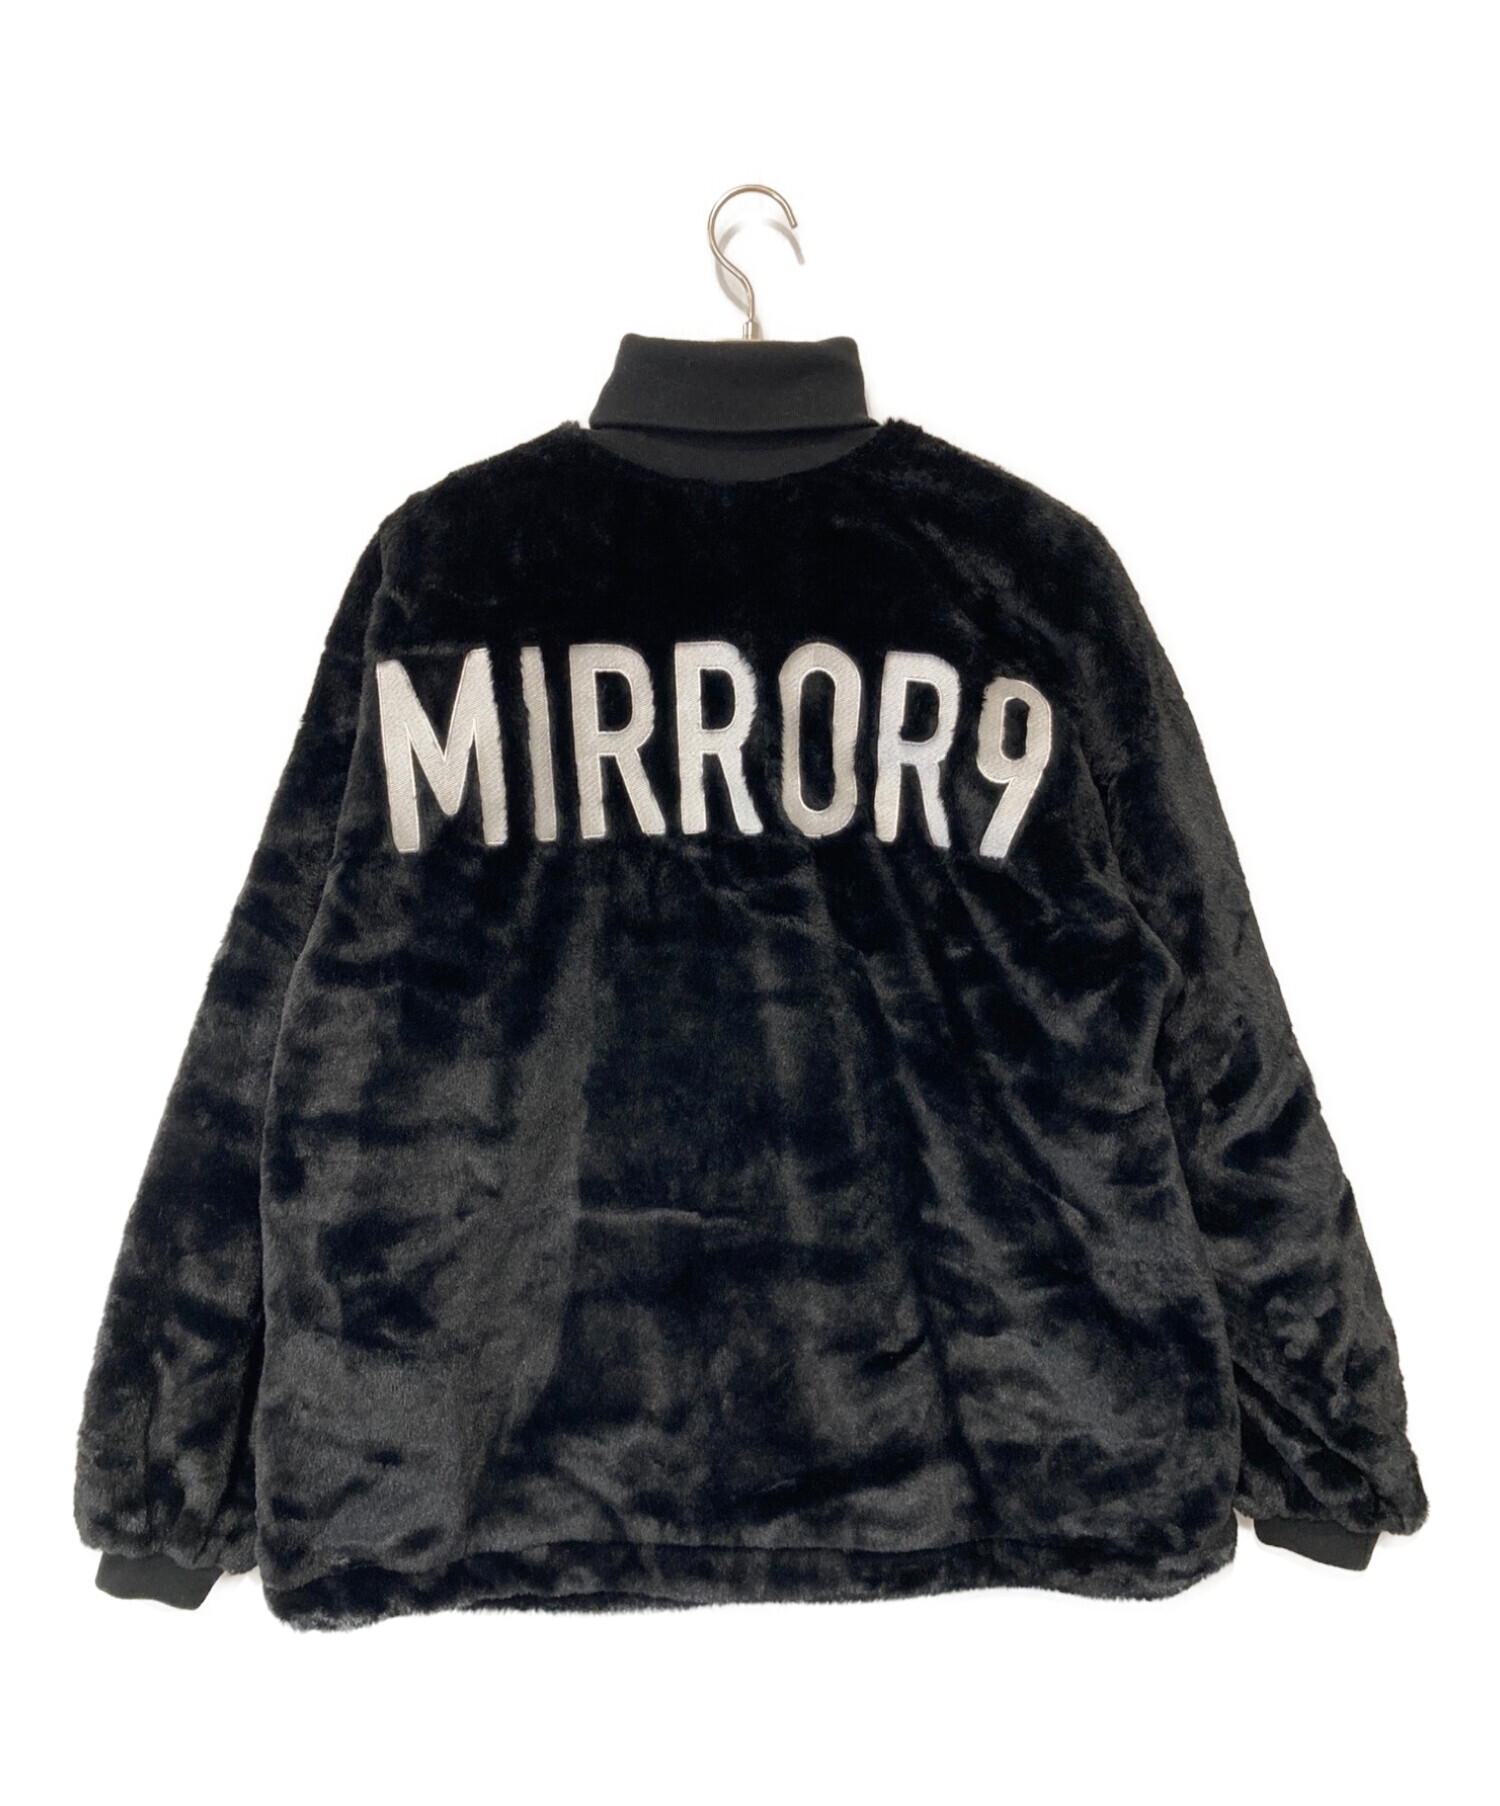 mirror9 (ミラーナイン) フェイクファー プルオーバー ブラック サイズ:Free